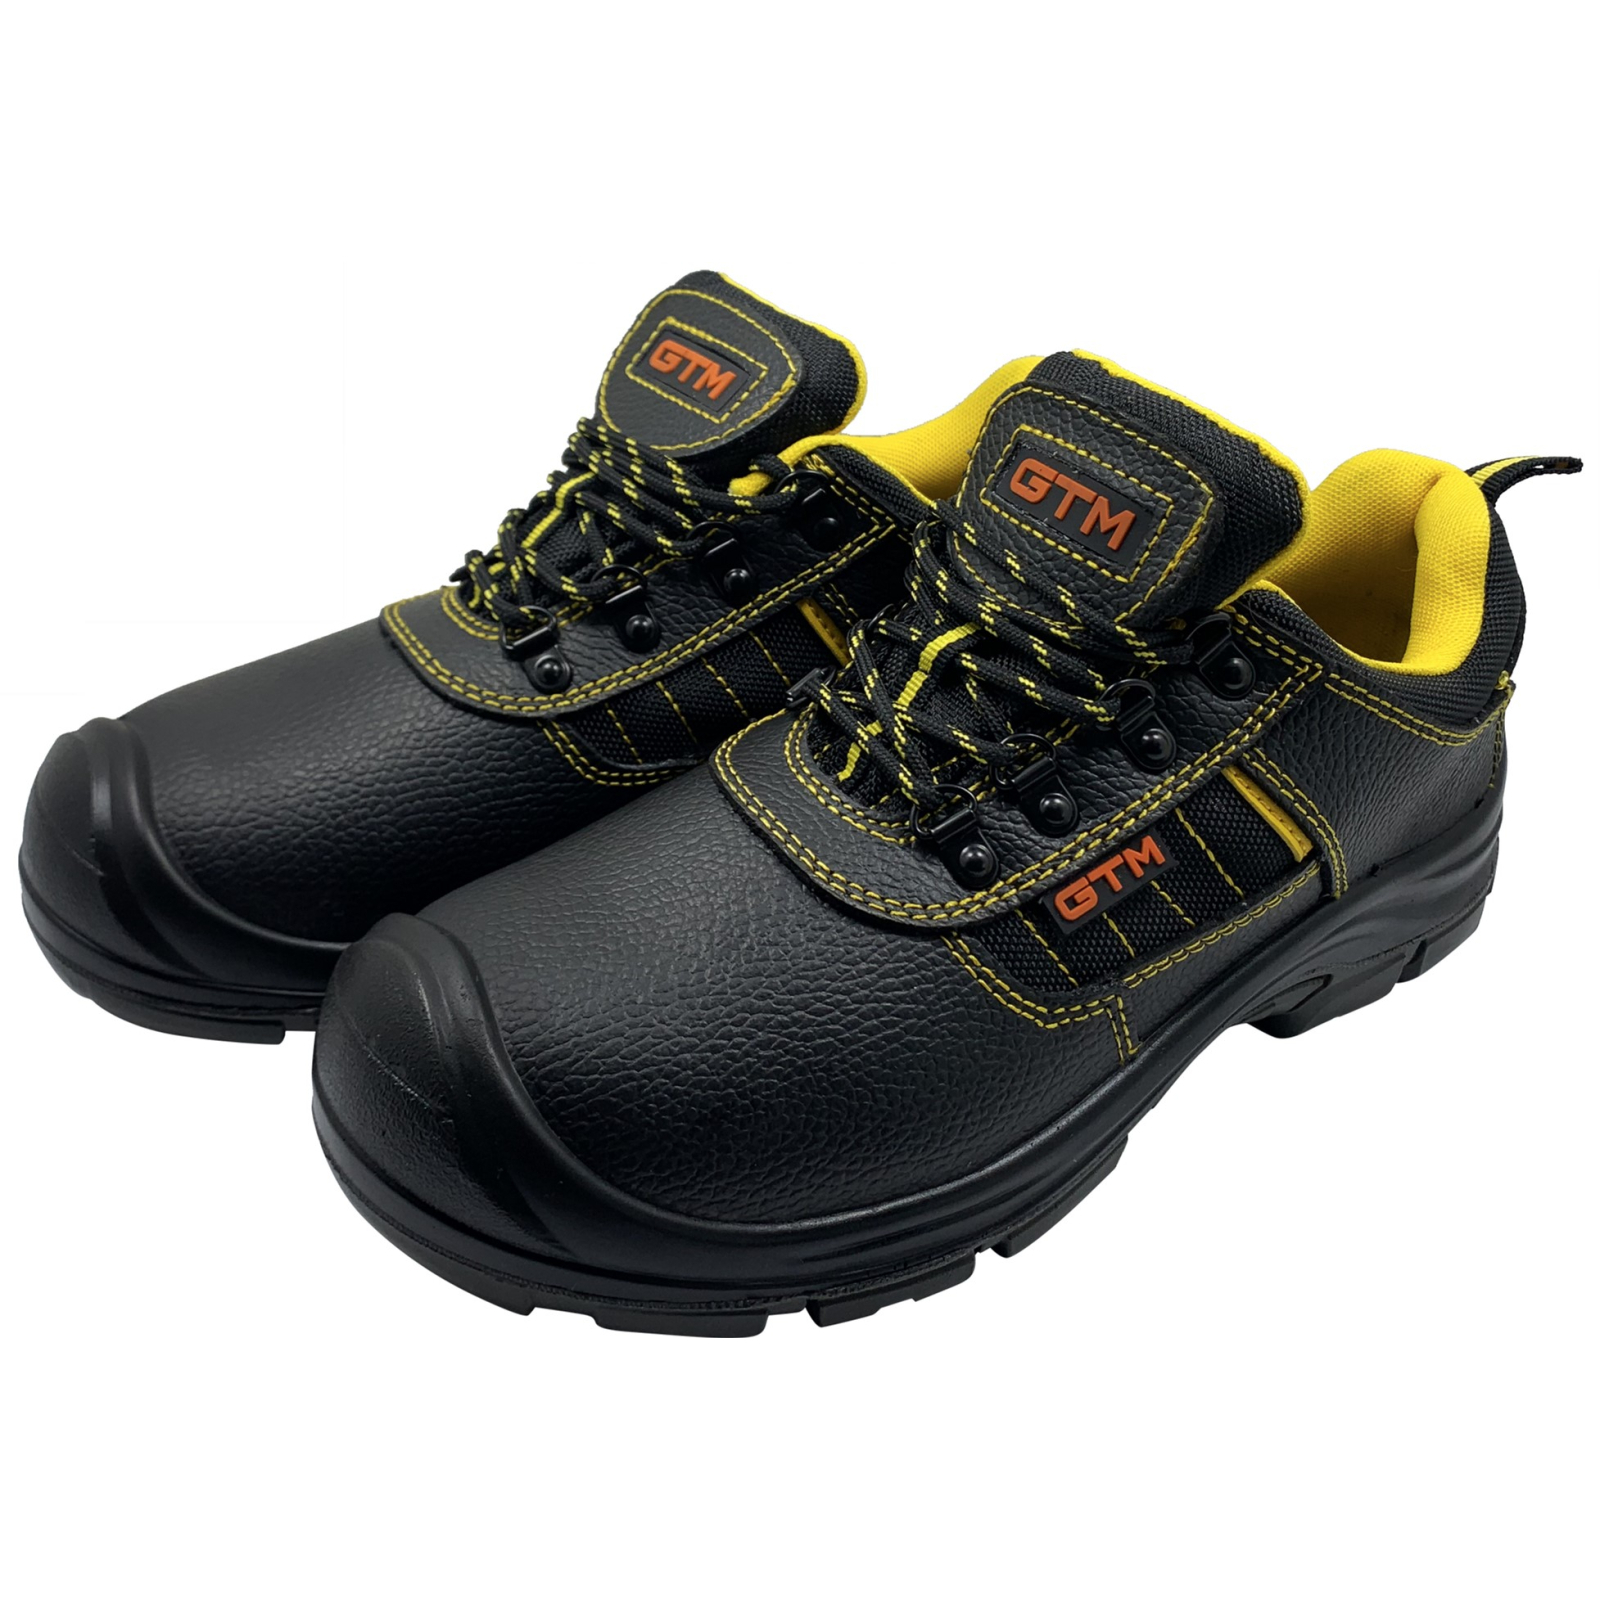 Ботинки рабочие GTM SM-078 мет. носок, р.41 с желтыми вставками (SM-078-41) изображение 3